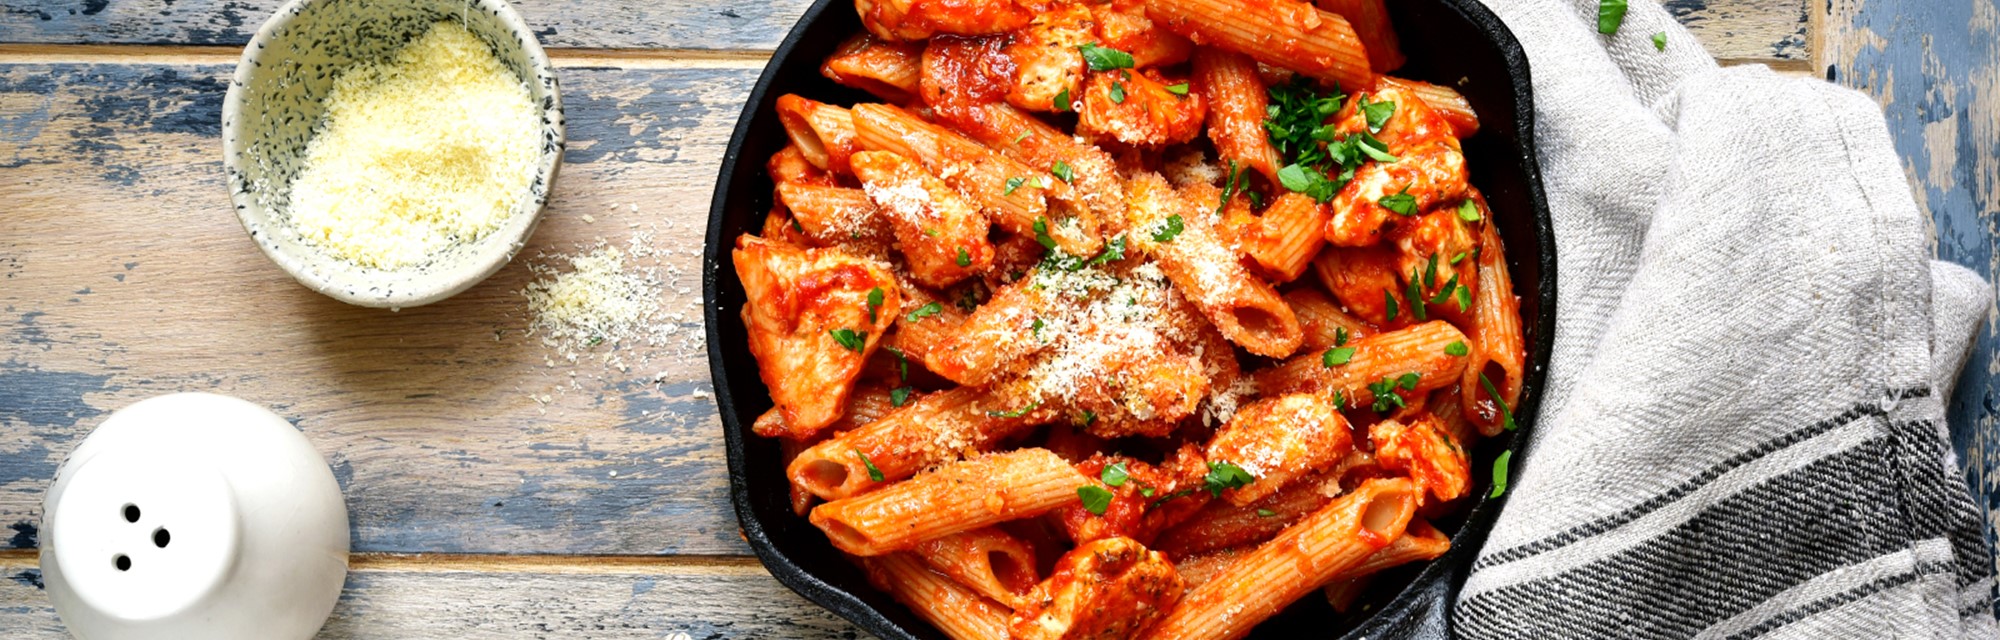 Chicken, tomato and mozzarella pasta